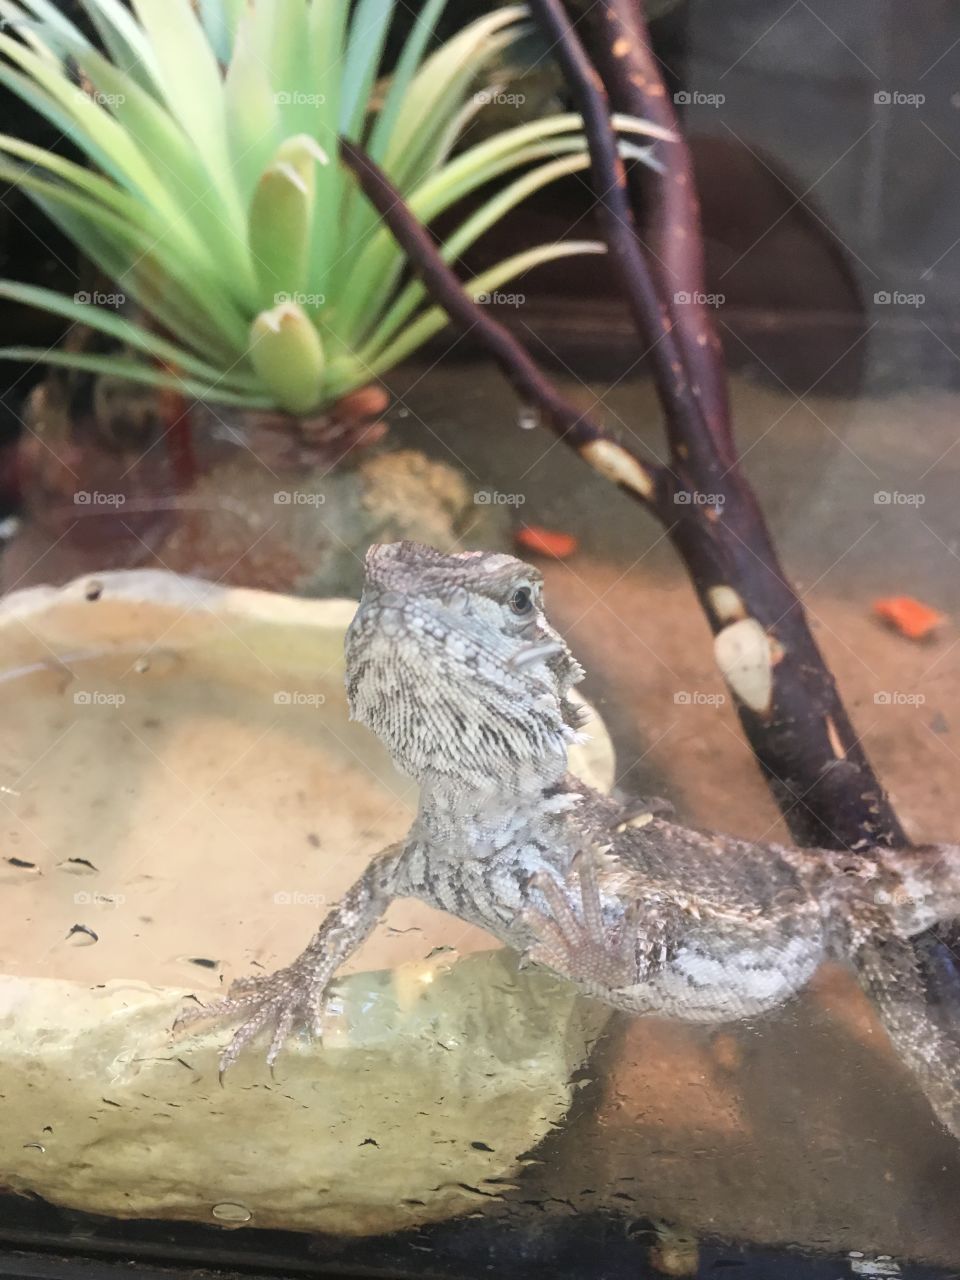 Little lizard saying hello